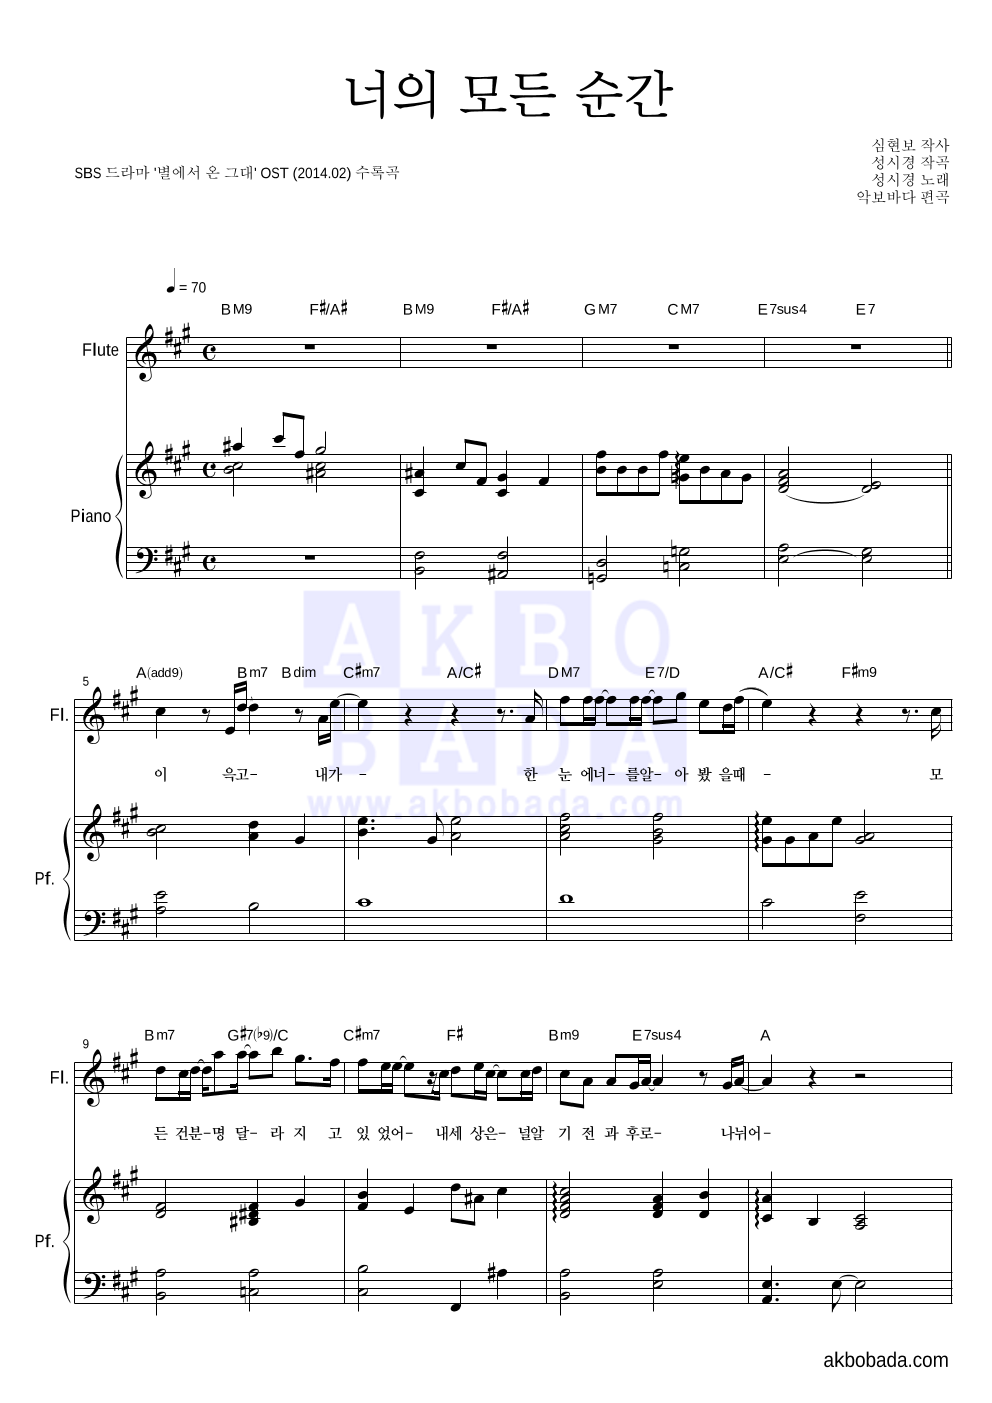 성시경 - 너의 모든 순간 (Piano Ver.) 플룻&피아노 악보 